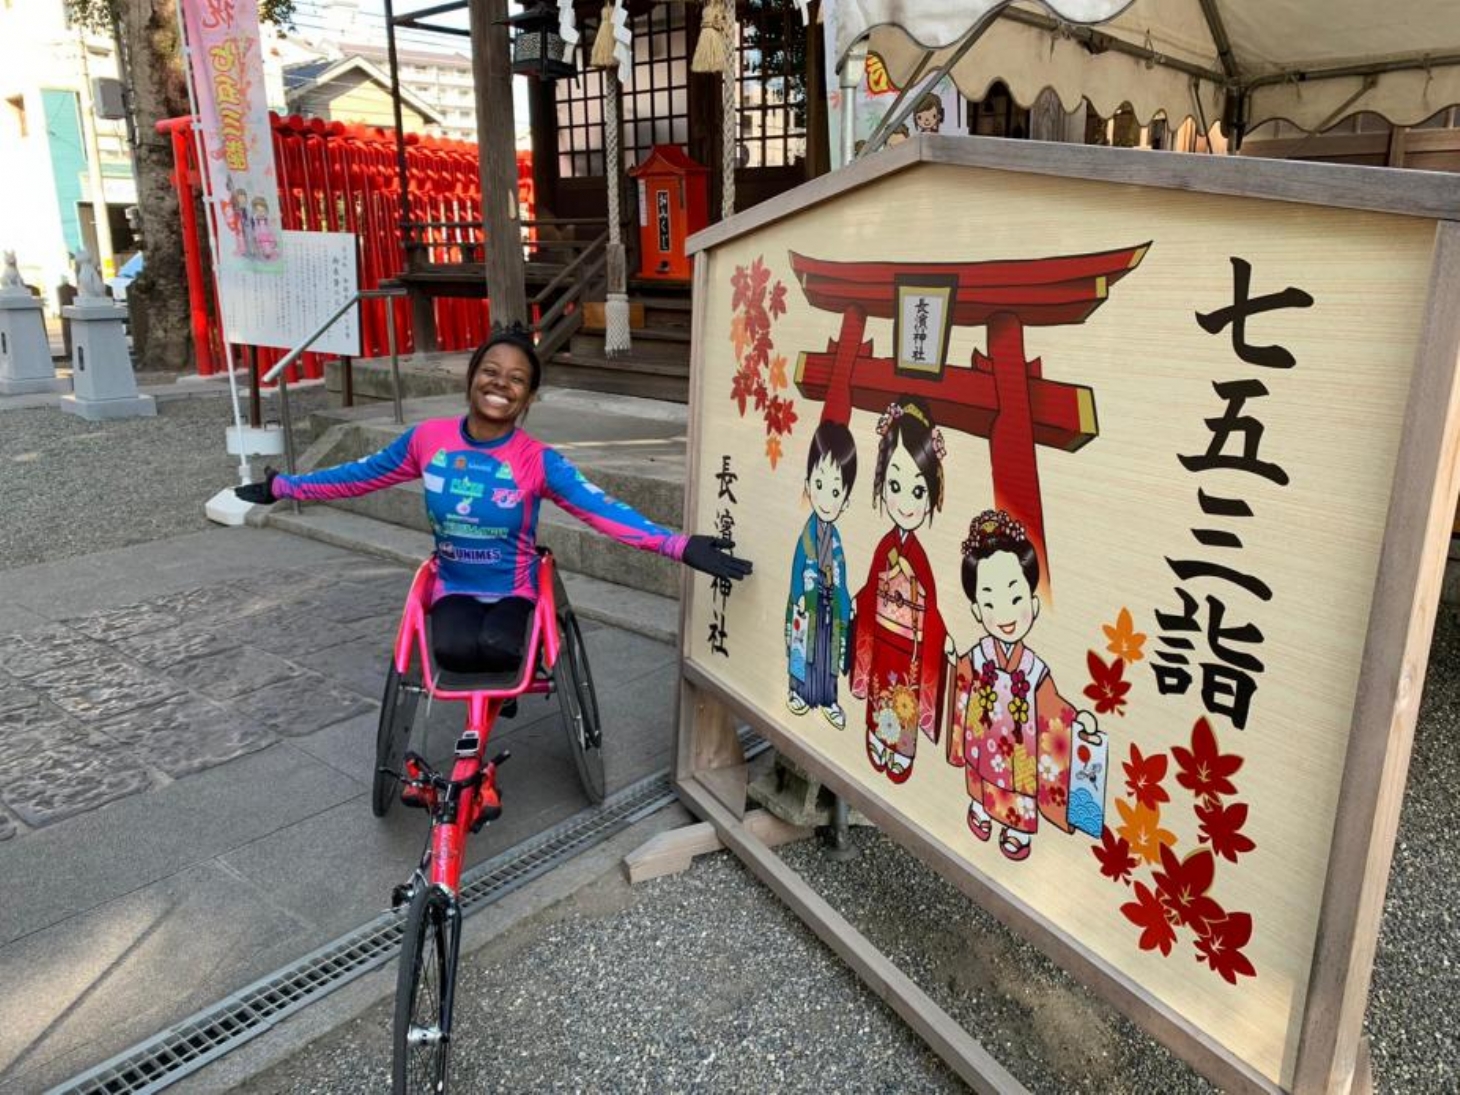 Vanessa Cristina fica em quinto lugar em Maratona no Japão | Jornal da Orla